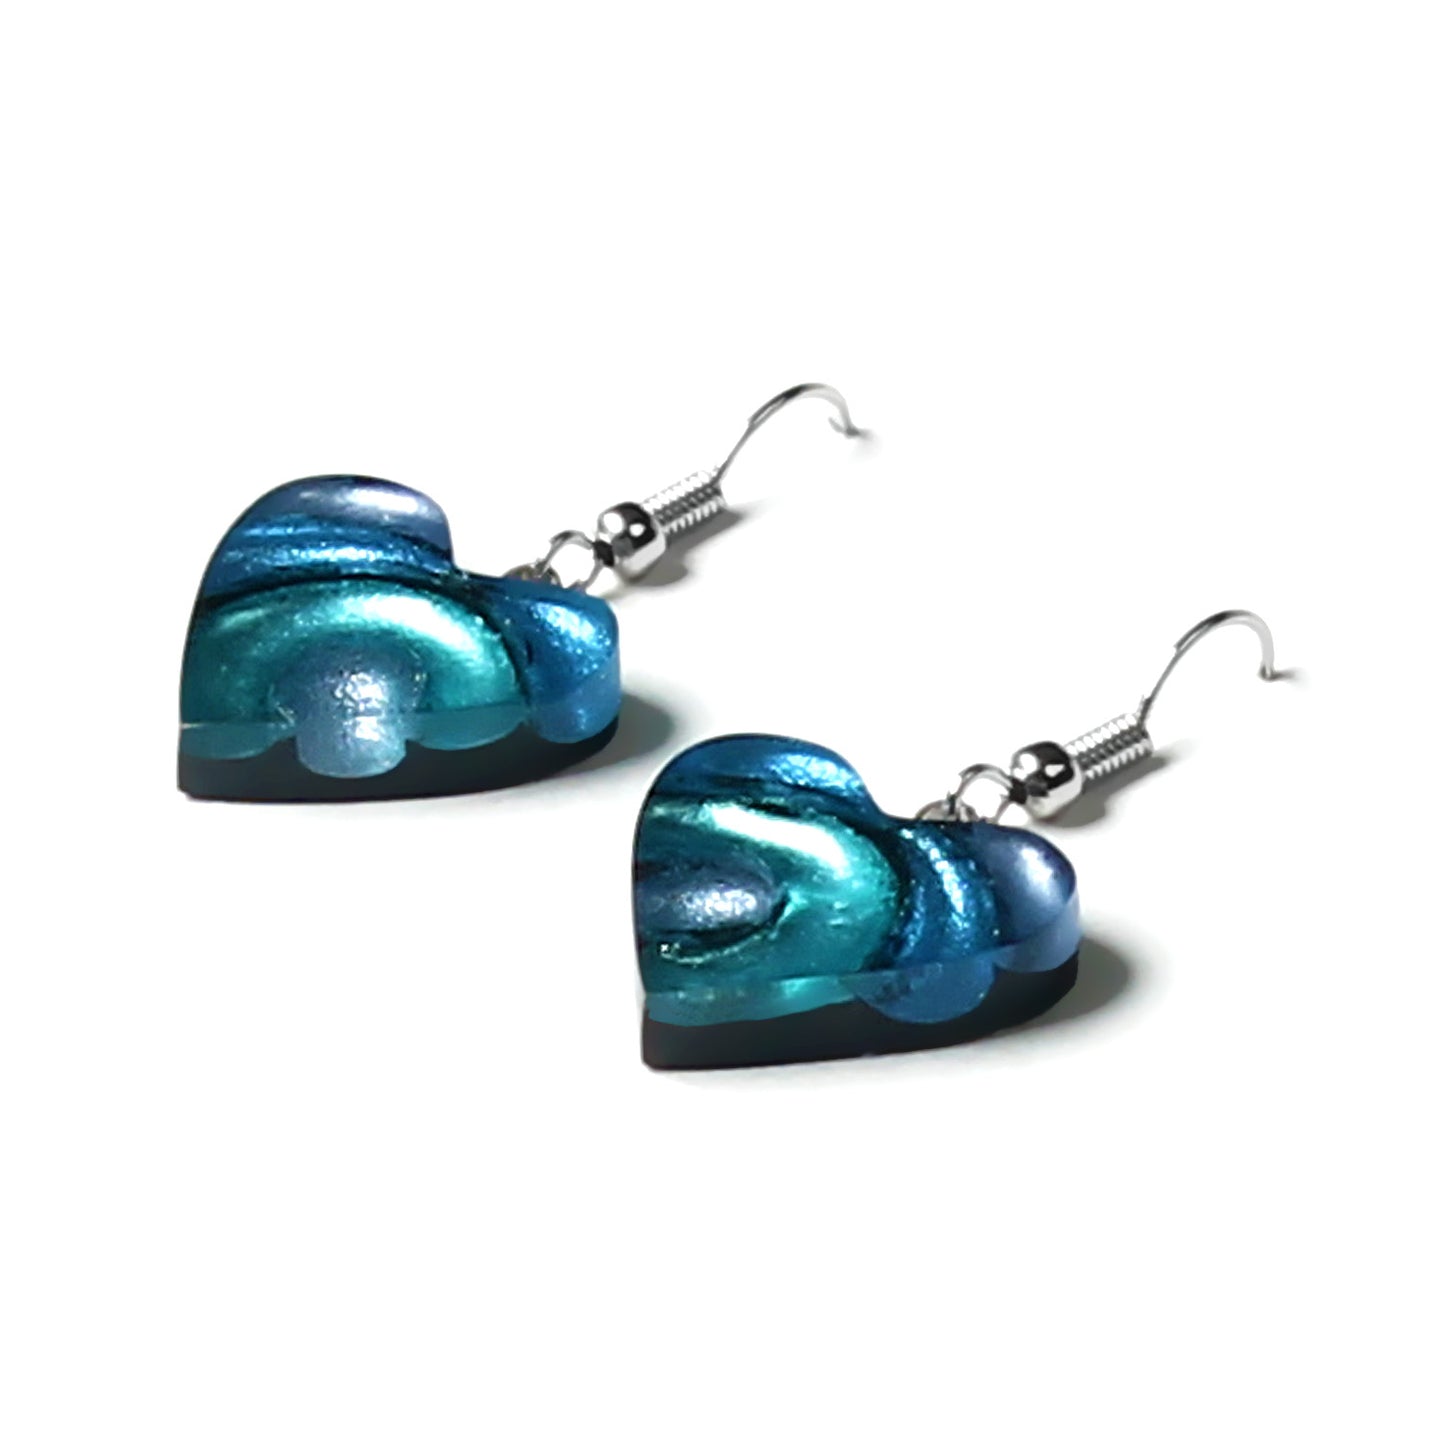 Ocean Mist Heart Swirl Fish Hook Earrings